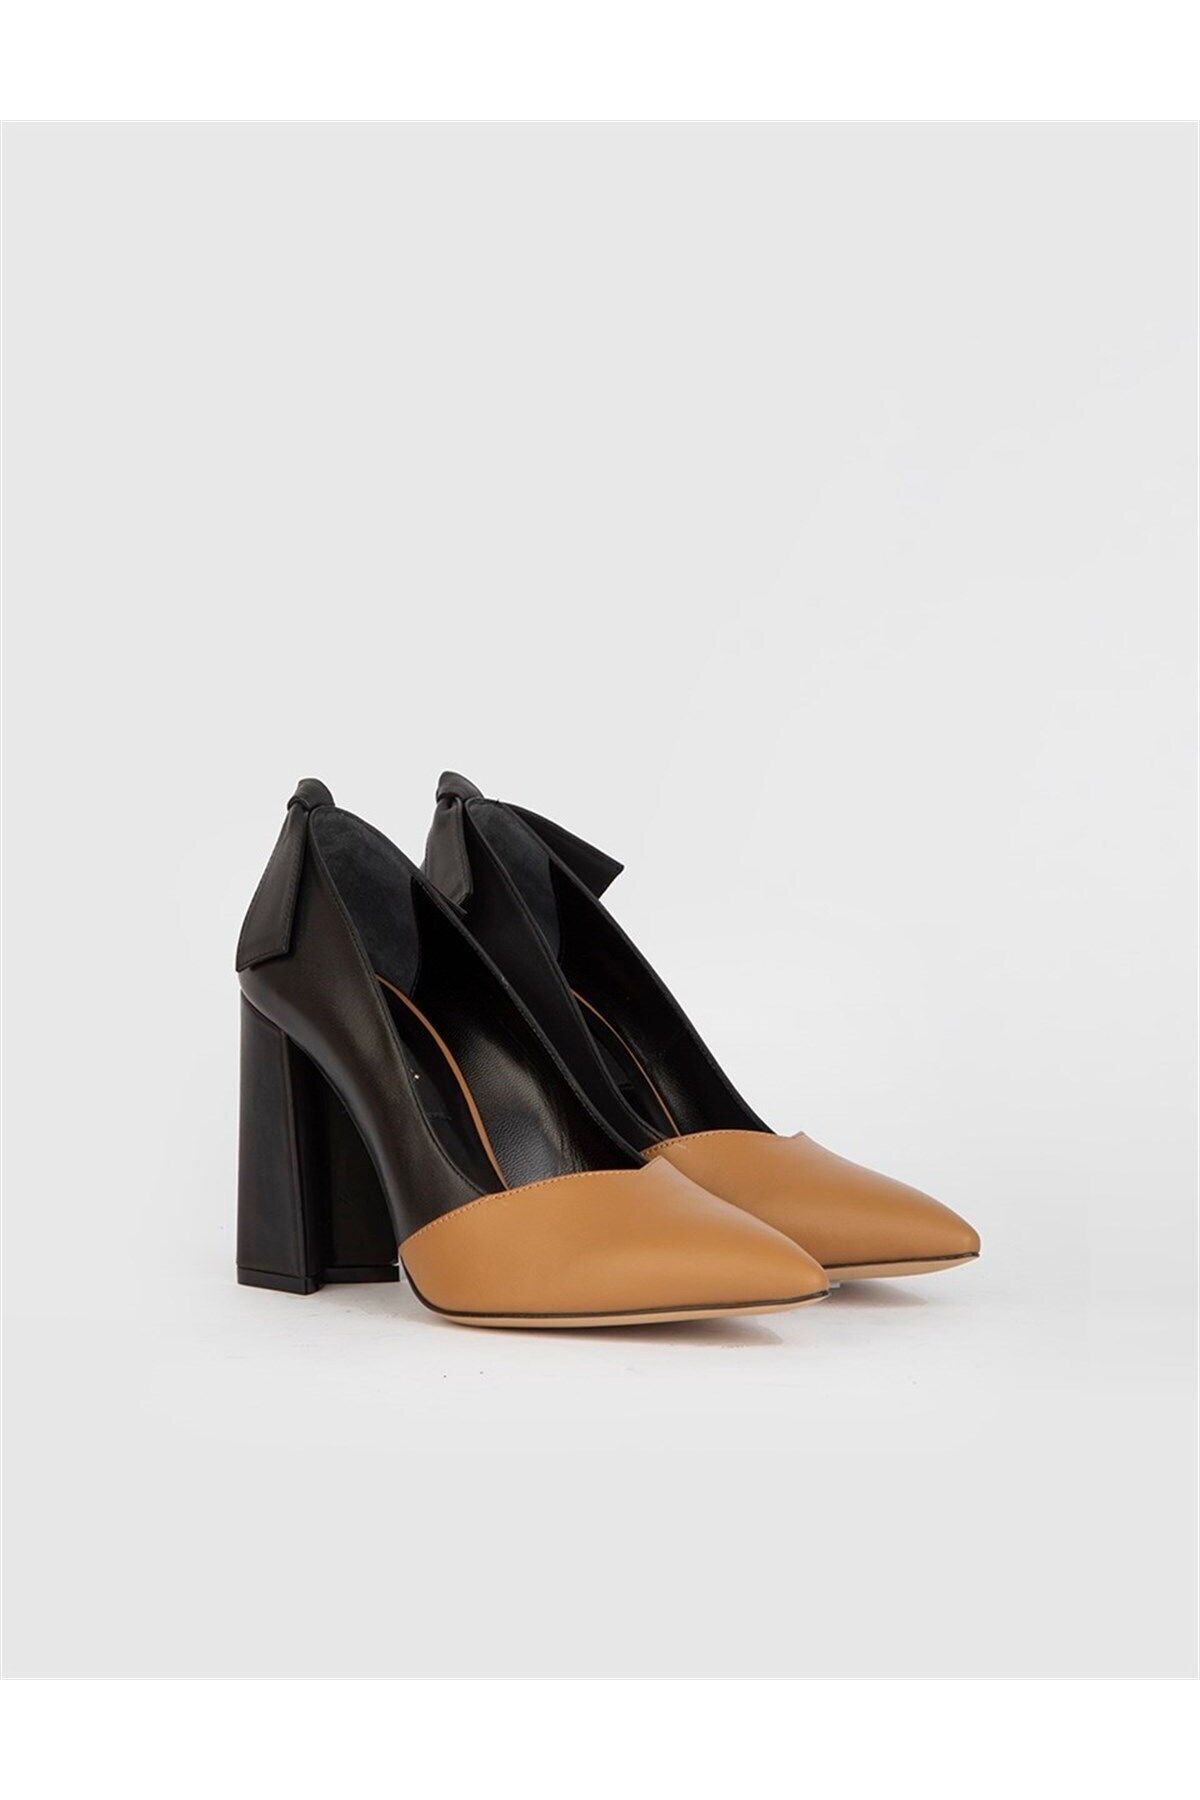 İlvi Daphne Hakiki Deri Kadın Taba Siyah Topuklu Ayakkabı